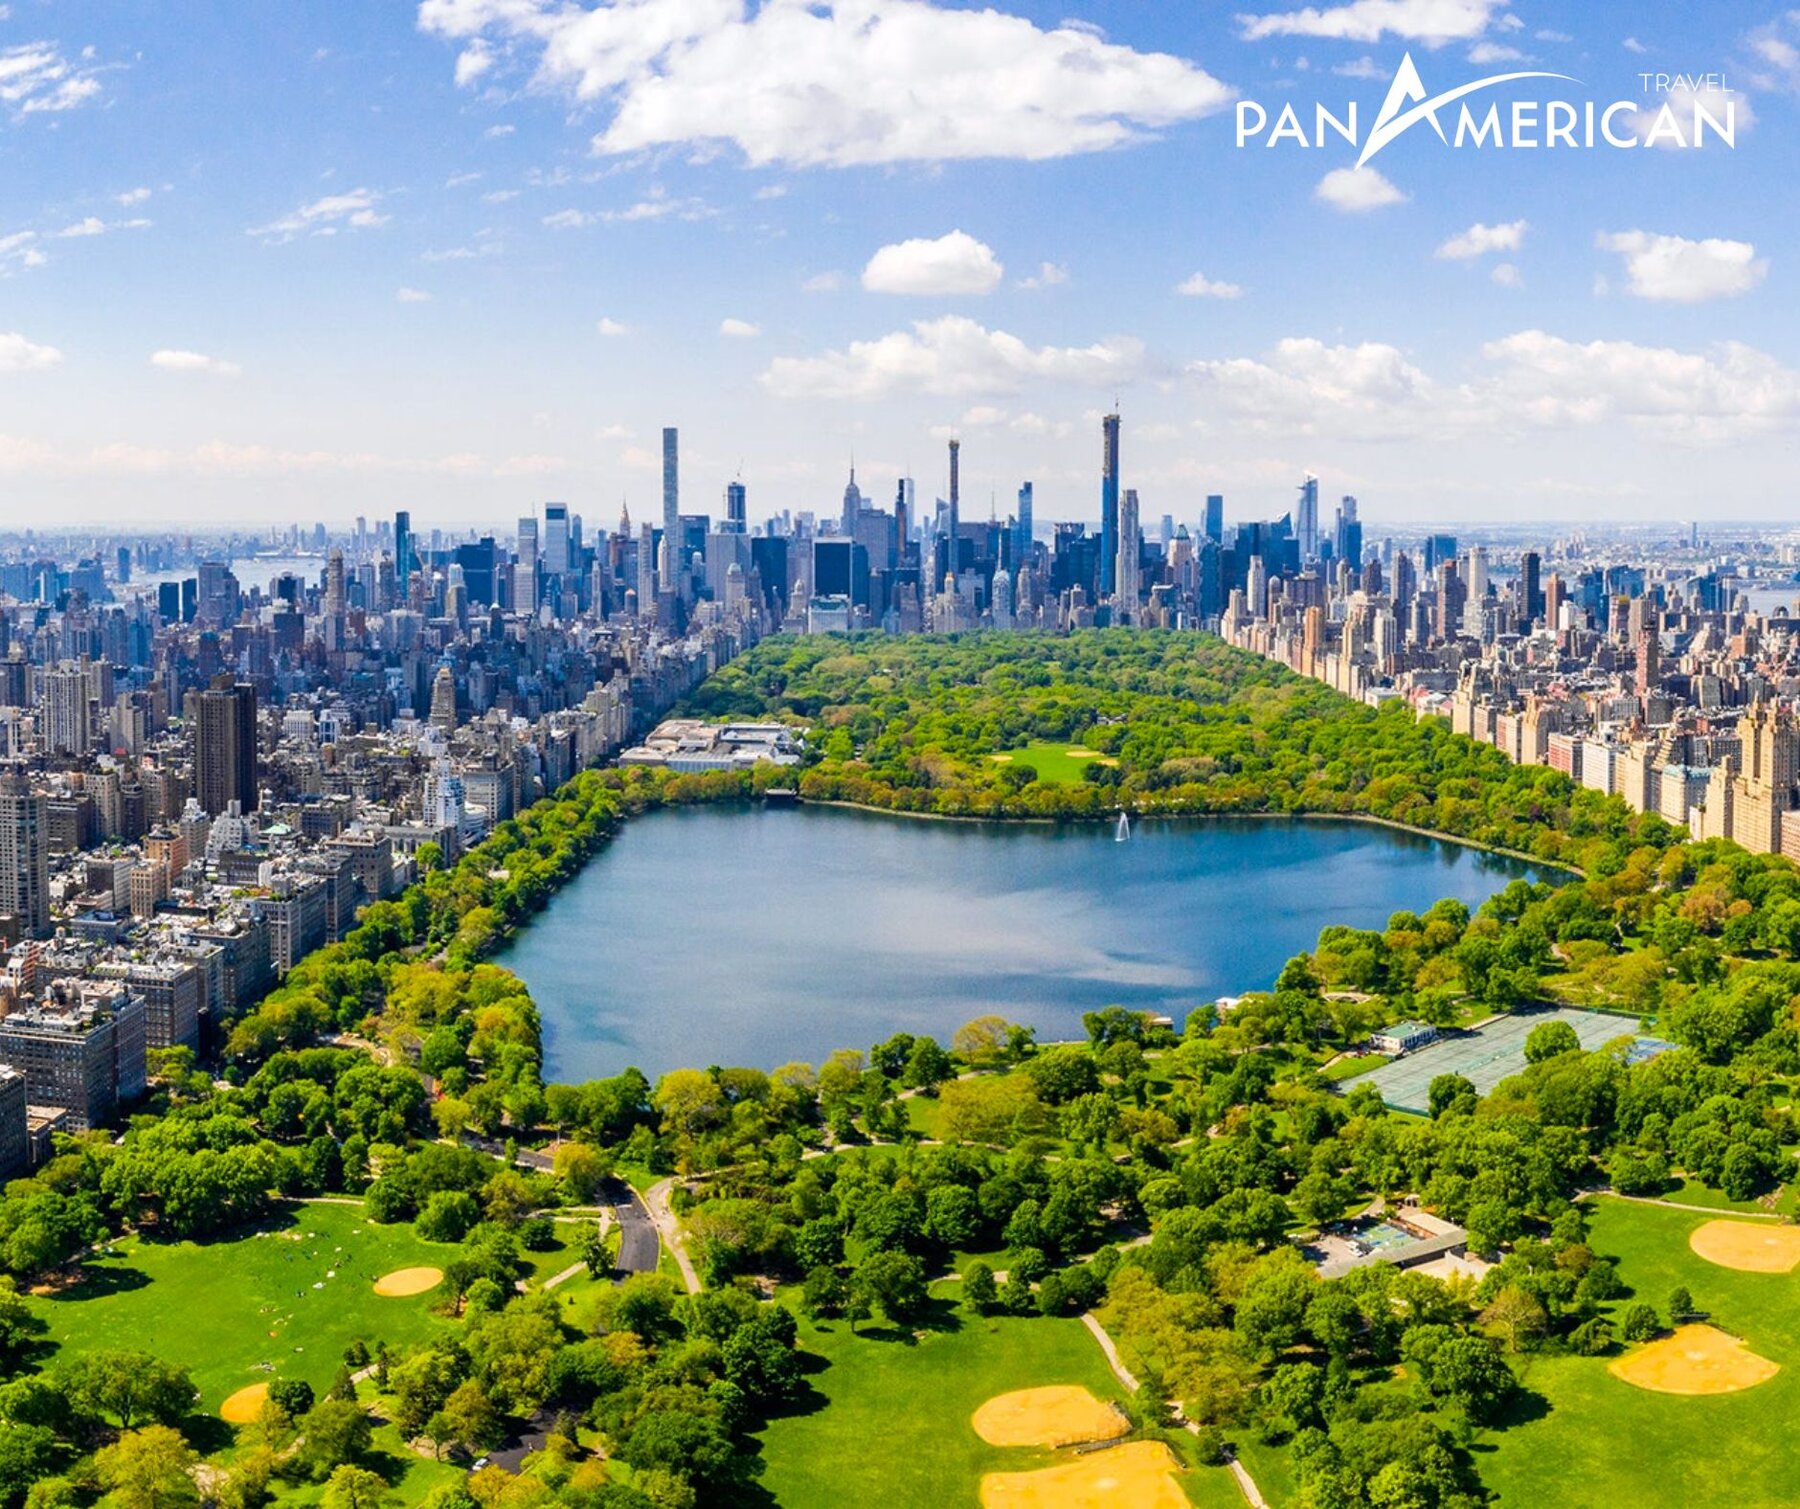 Công viên Central Park - Lá phổi xanh của thành phố New York